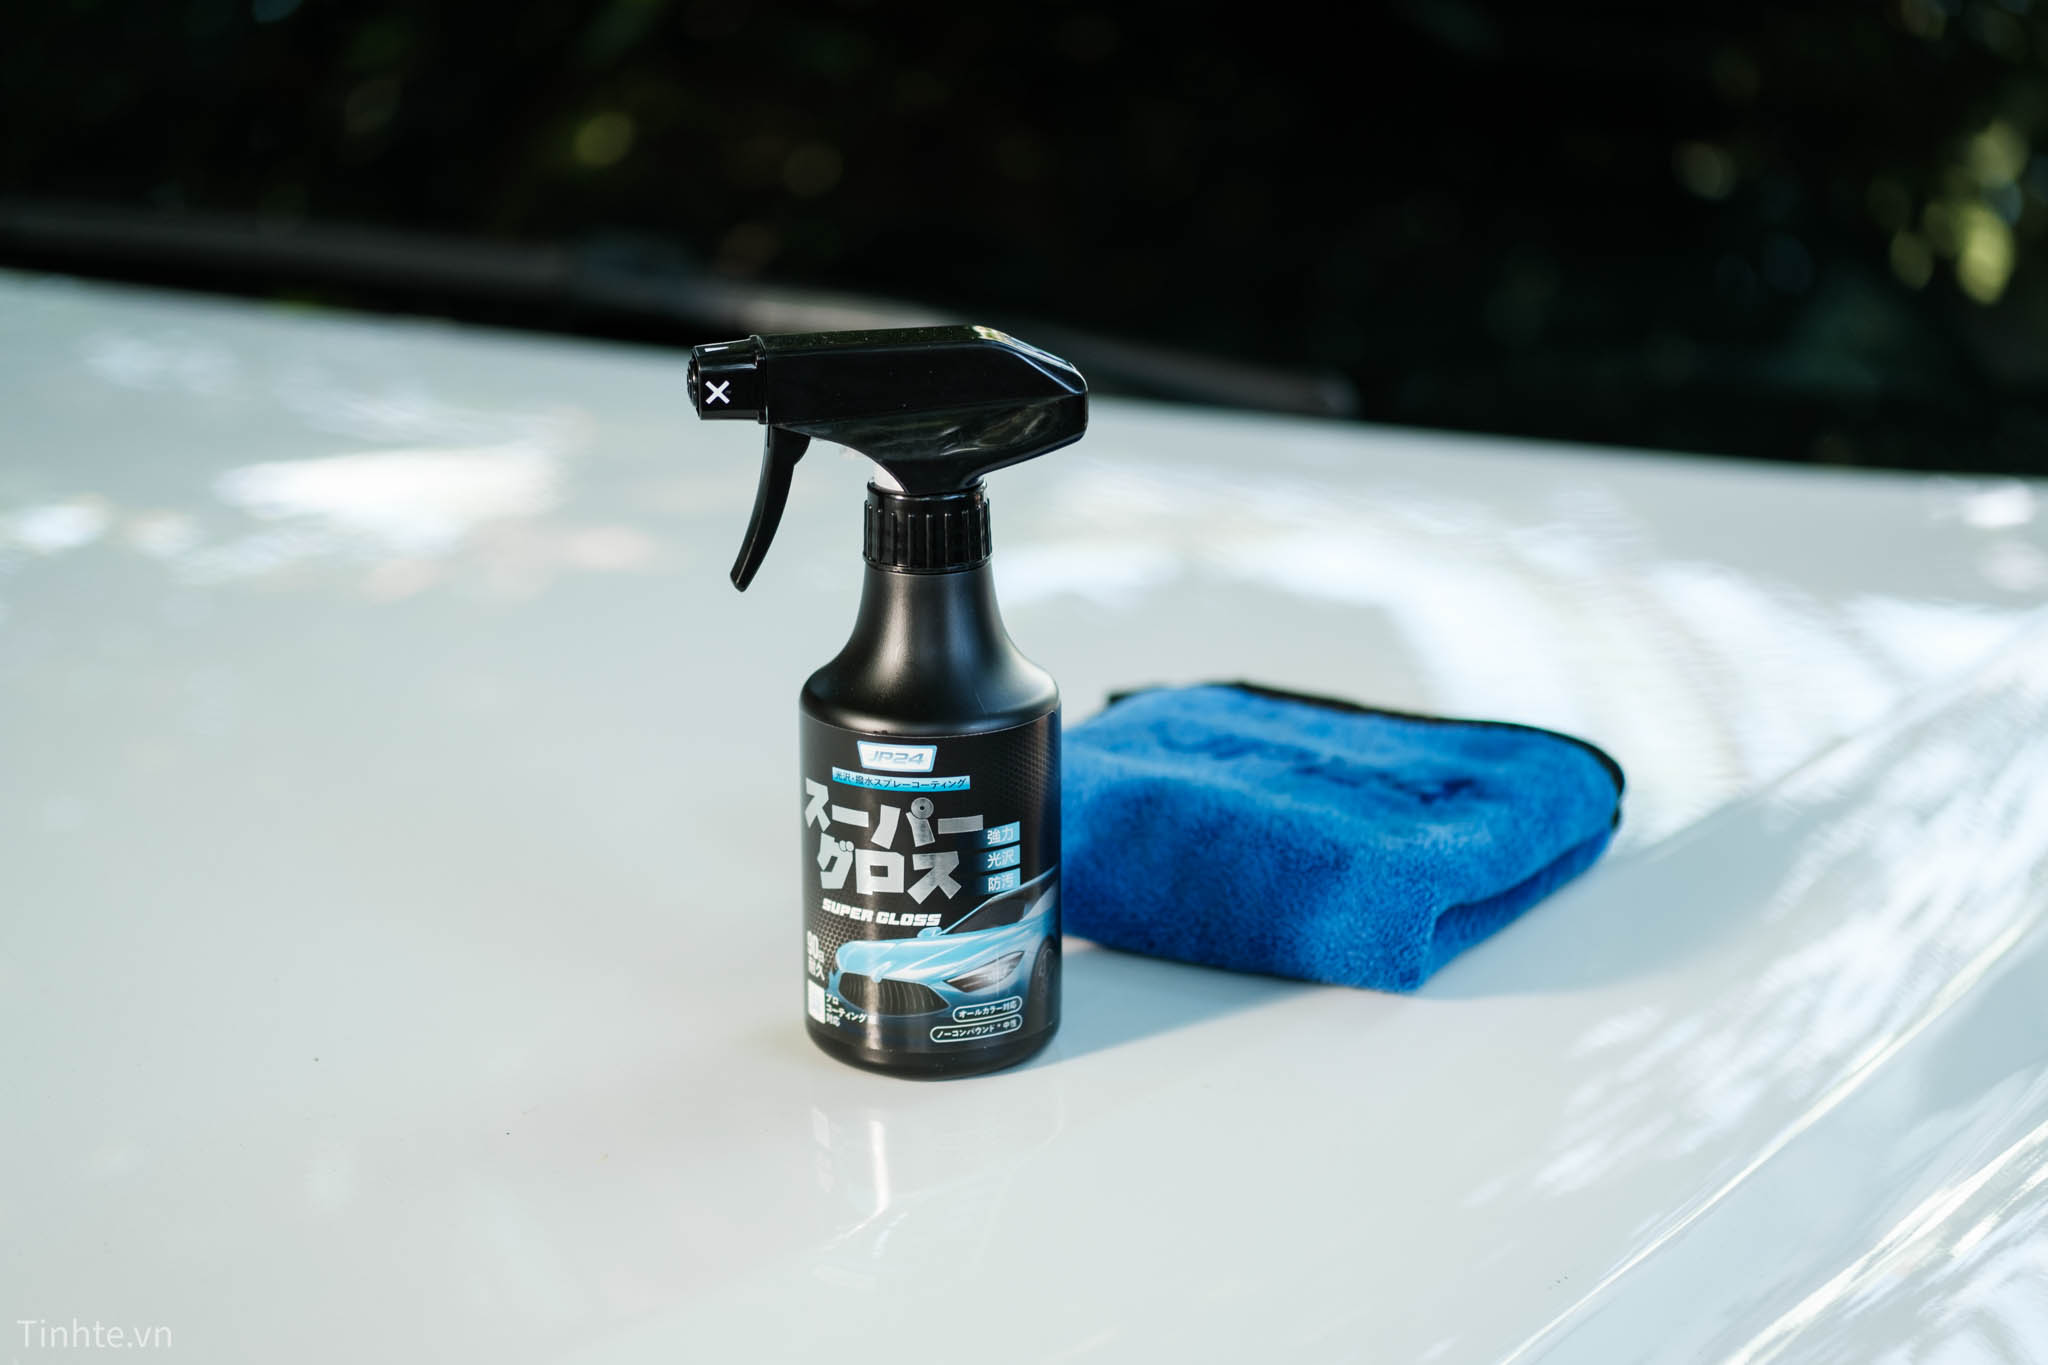 Trên tay và dùng thử xịt phủ bóng xe hơi JP24 Super Gloss: bảo vệ sơn và tạo hiệu ứng lá sen